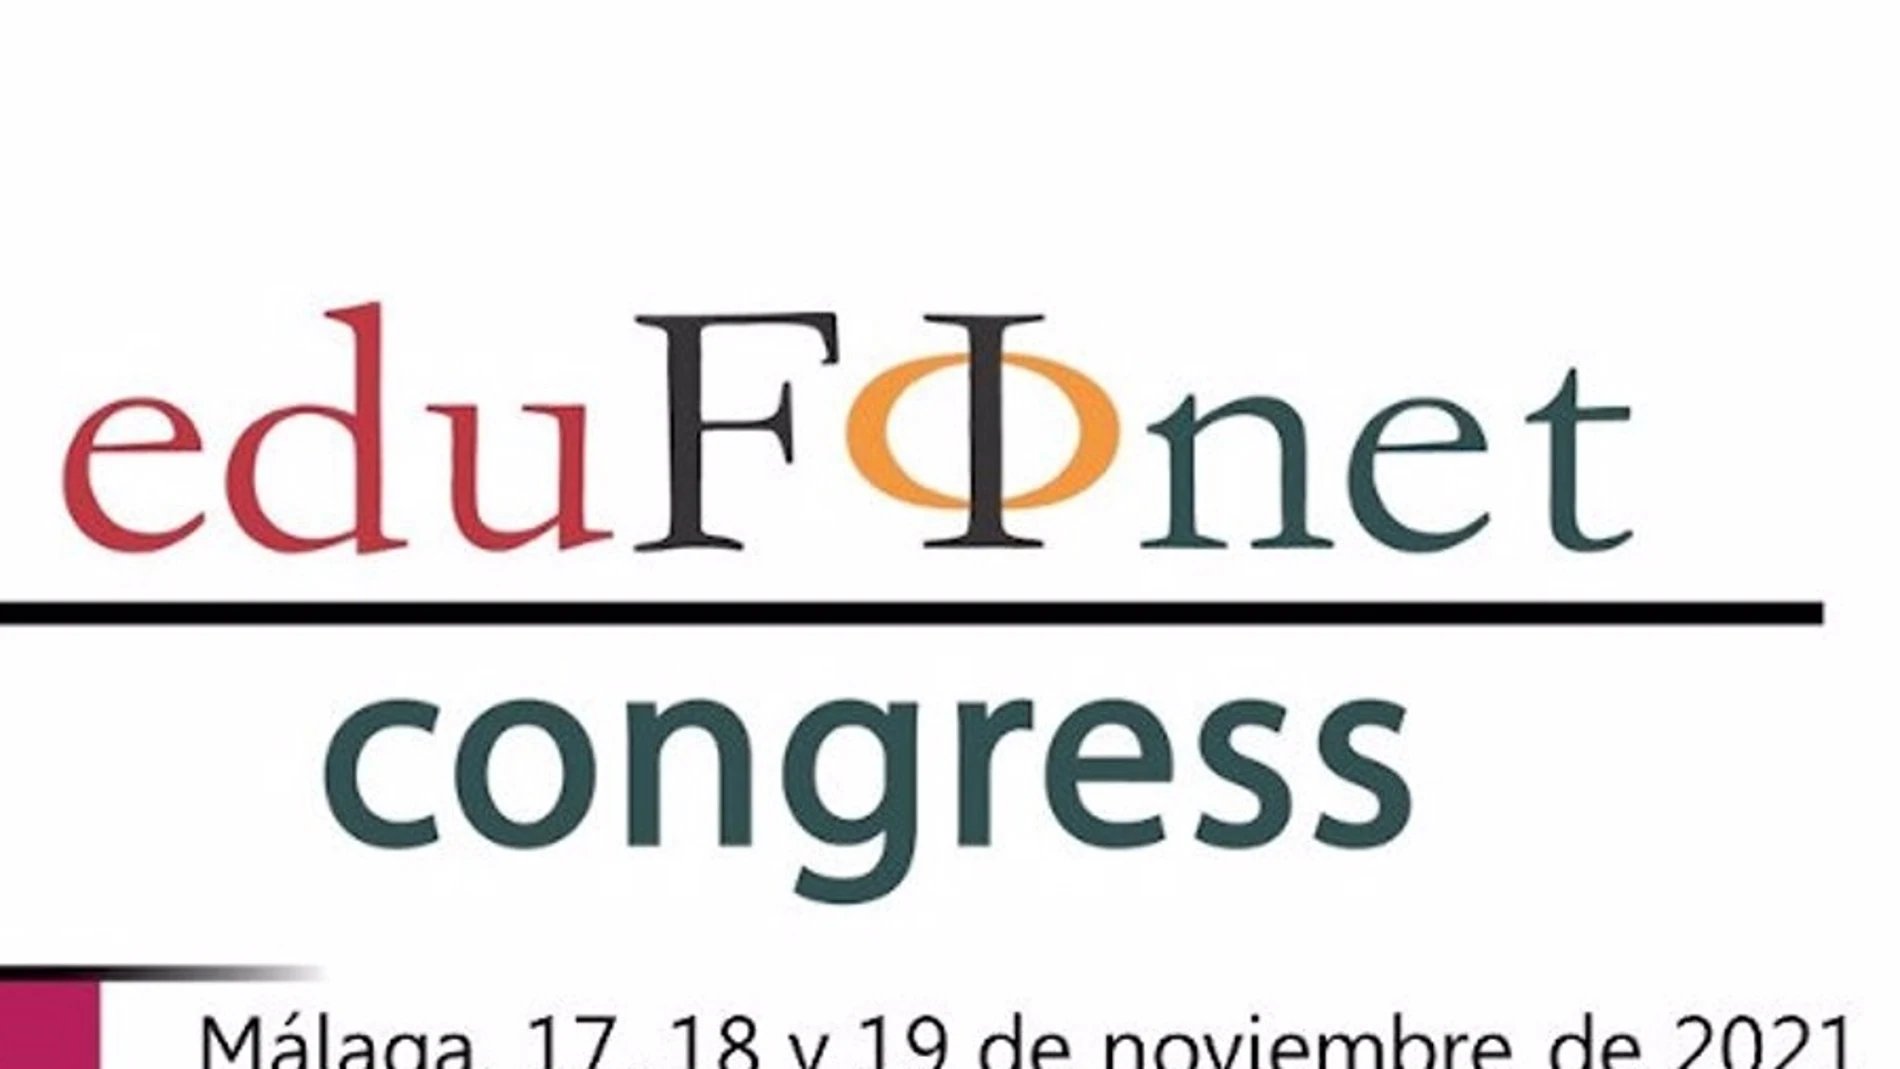 El IV Congreso de Edufinet de Unicaja analizará del 17 al 19 de noviembre los retos de la educación financiera ante una época de cambio de paradigmas